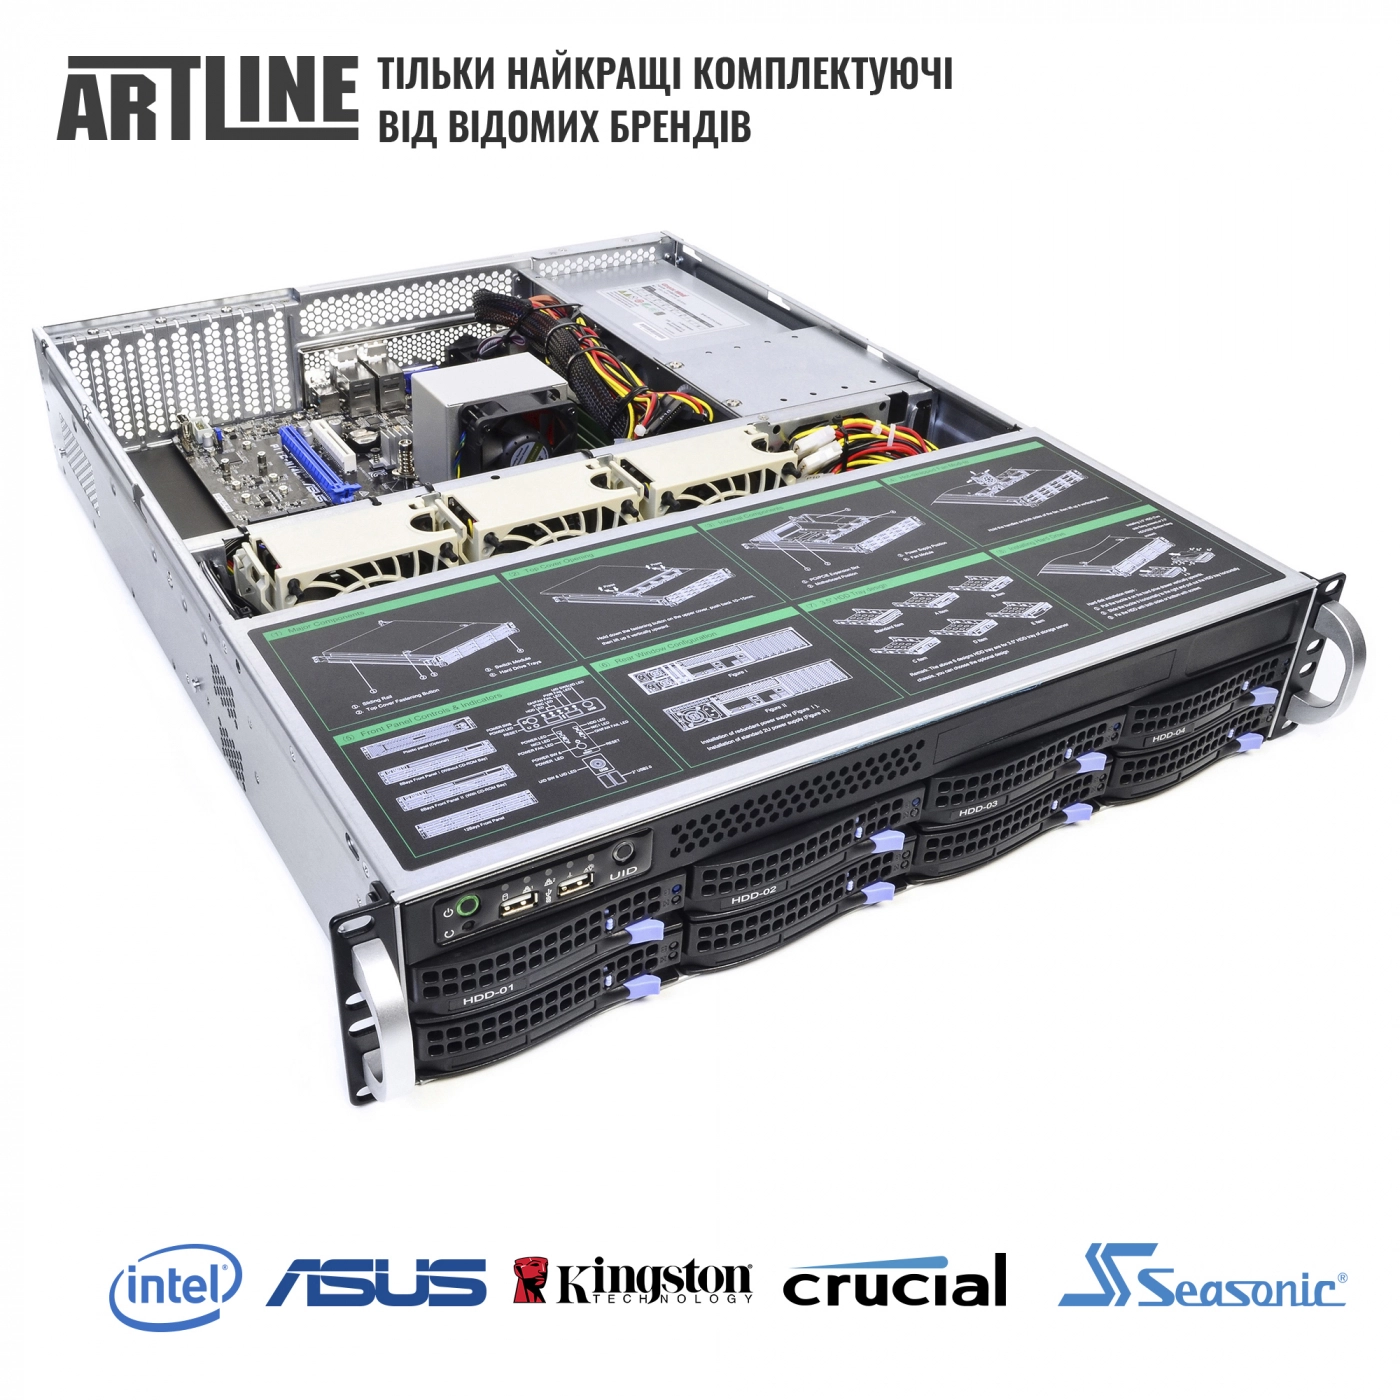 Купить Сервер ARTLINE Business R35v30 - фото 6